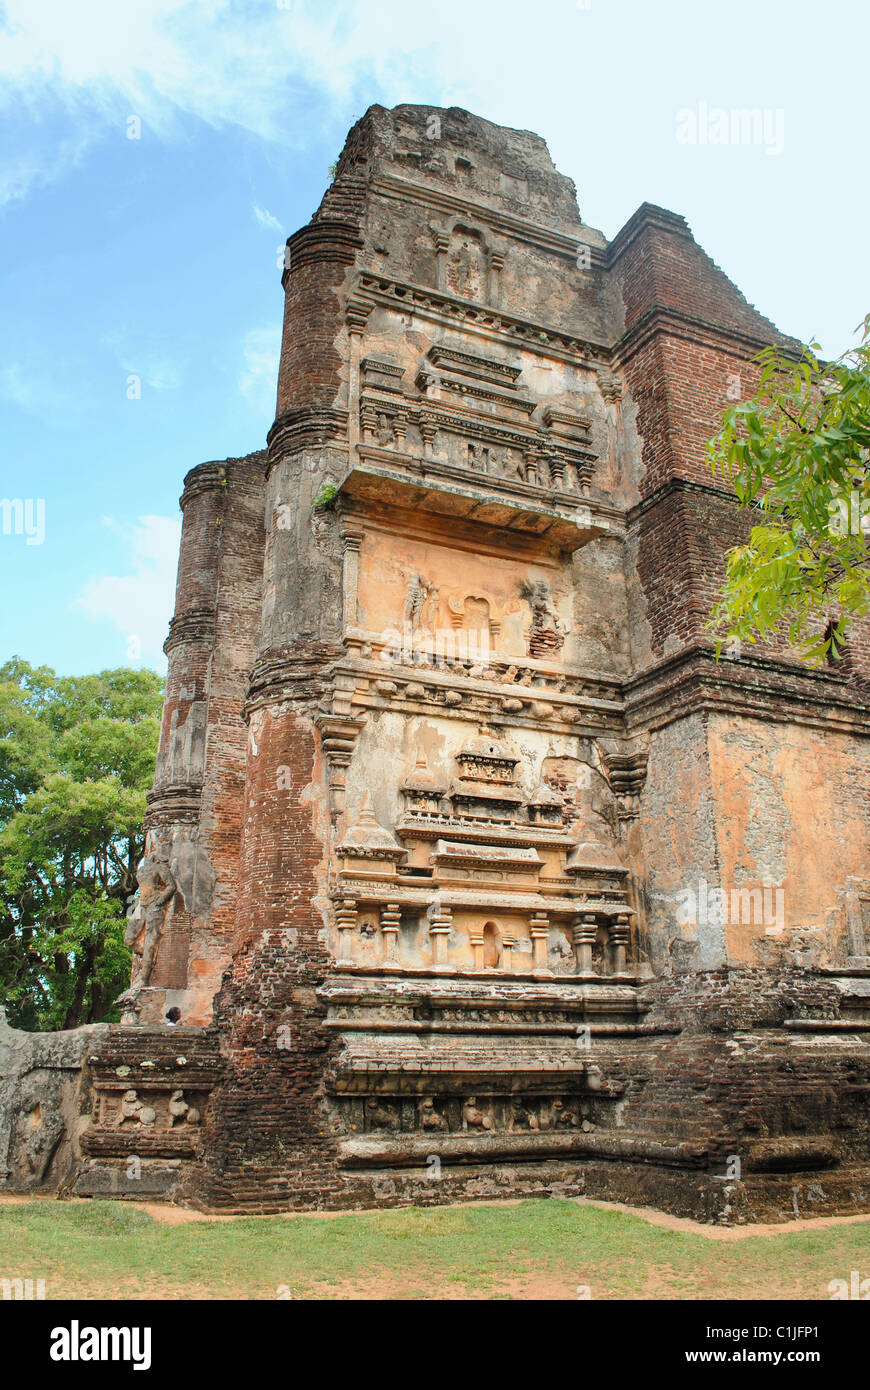 Lankatileke vihara in Polonnaruwa, Sri Lanka. Es ist einer der prächtigsten buddhistischen Schreine in Asien im 12. Jahrhundert. Stockfoto